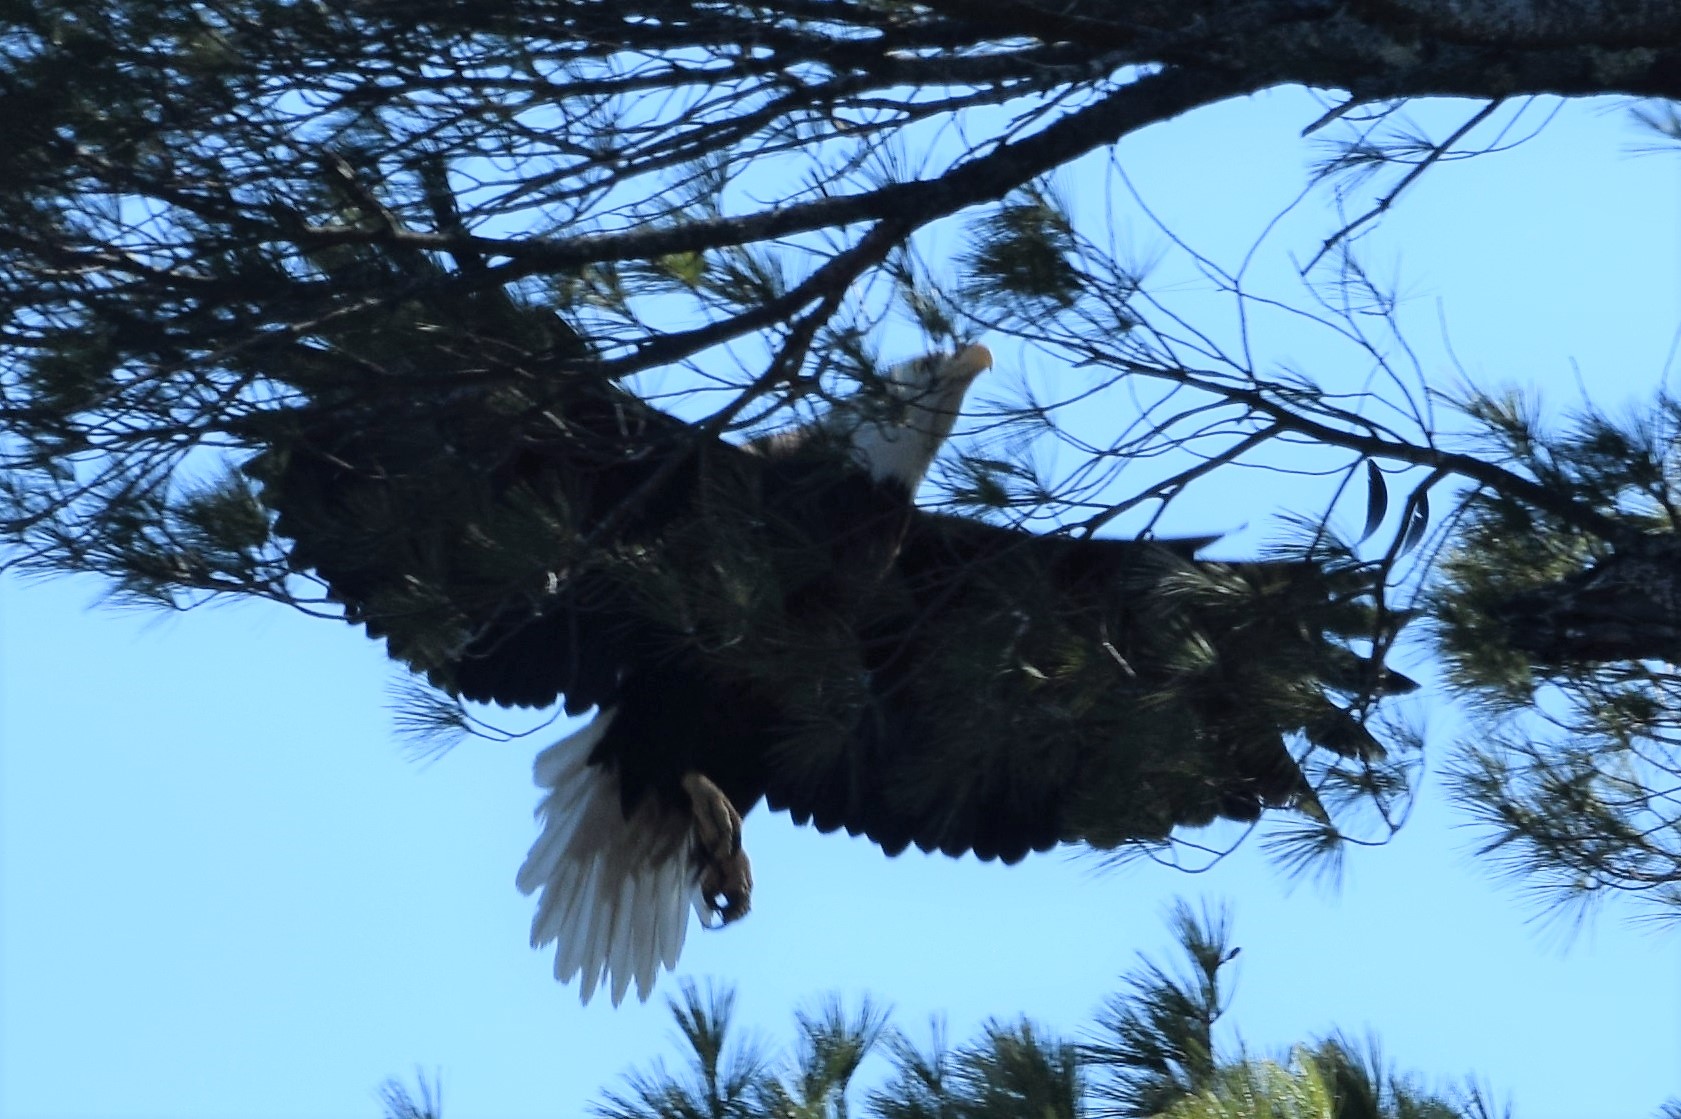 Male ADK Bald Eagle arrives at nest, April 2020